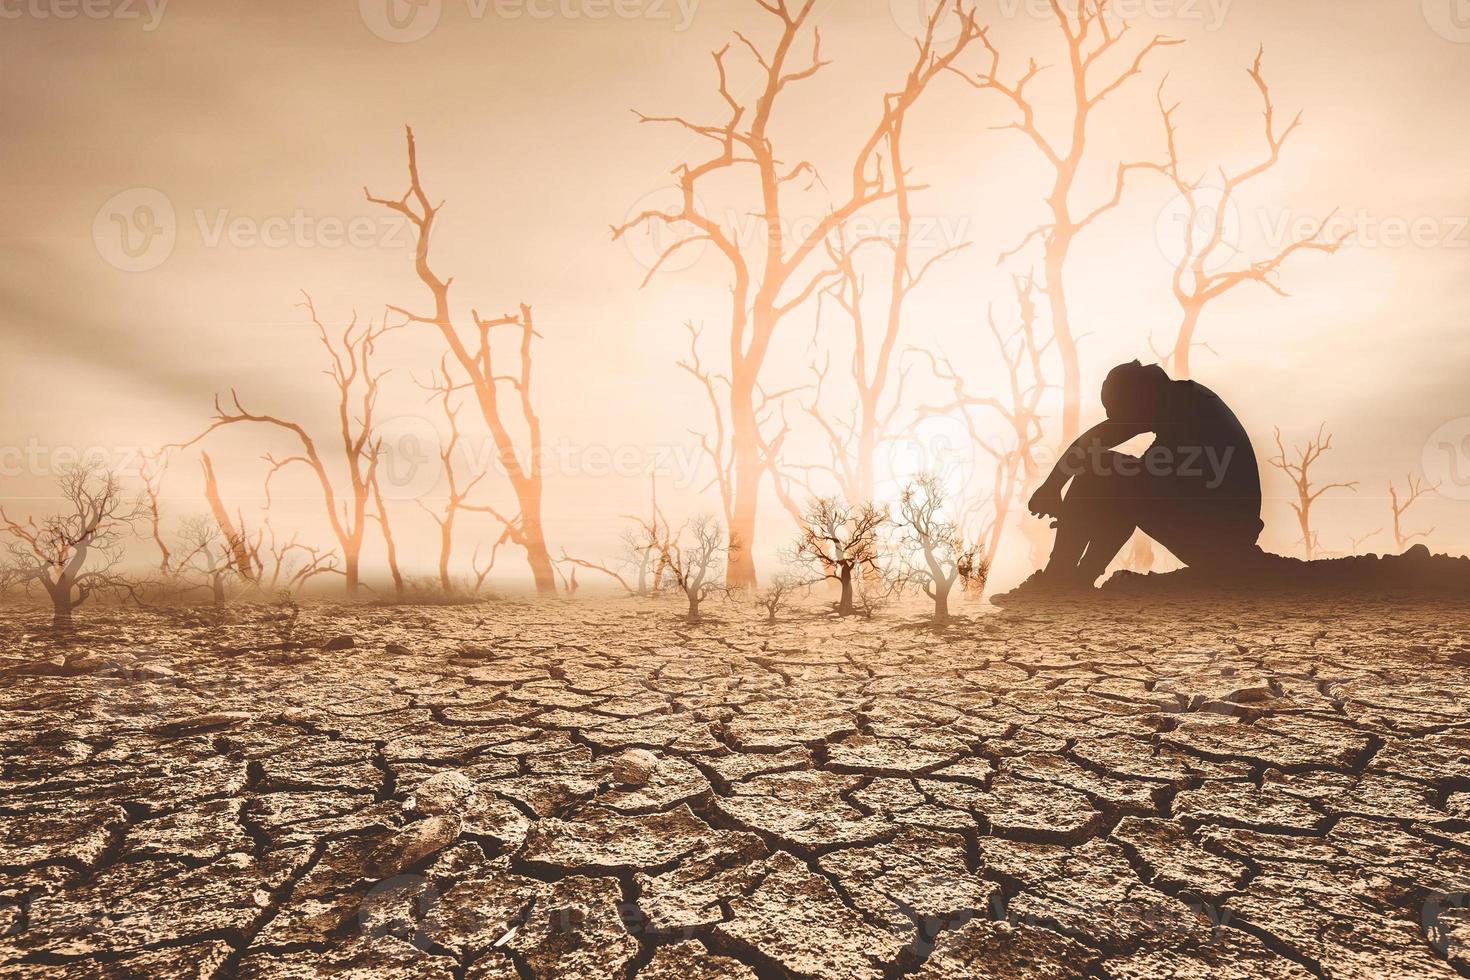 conceito de aquecimento global e seca as pessoas sentaram-se de luto pela seca. um mundo sem escassez de água e alimentos. crise hídrica e alimentar foto